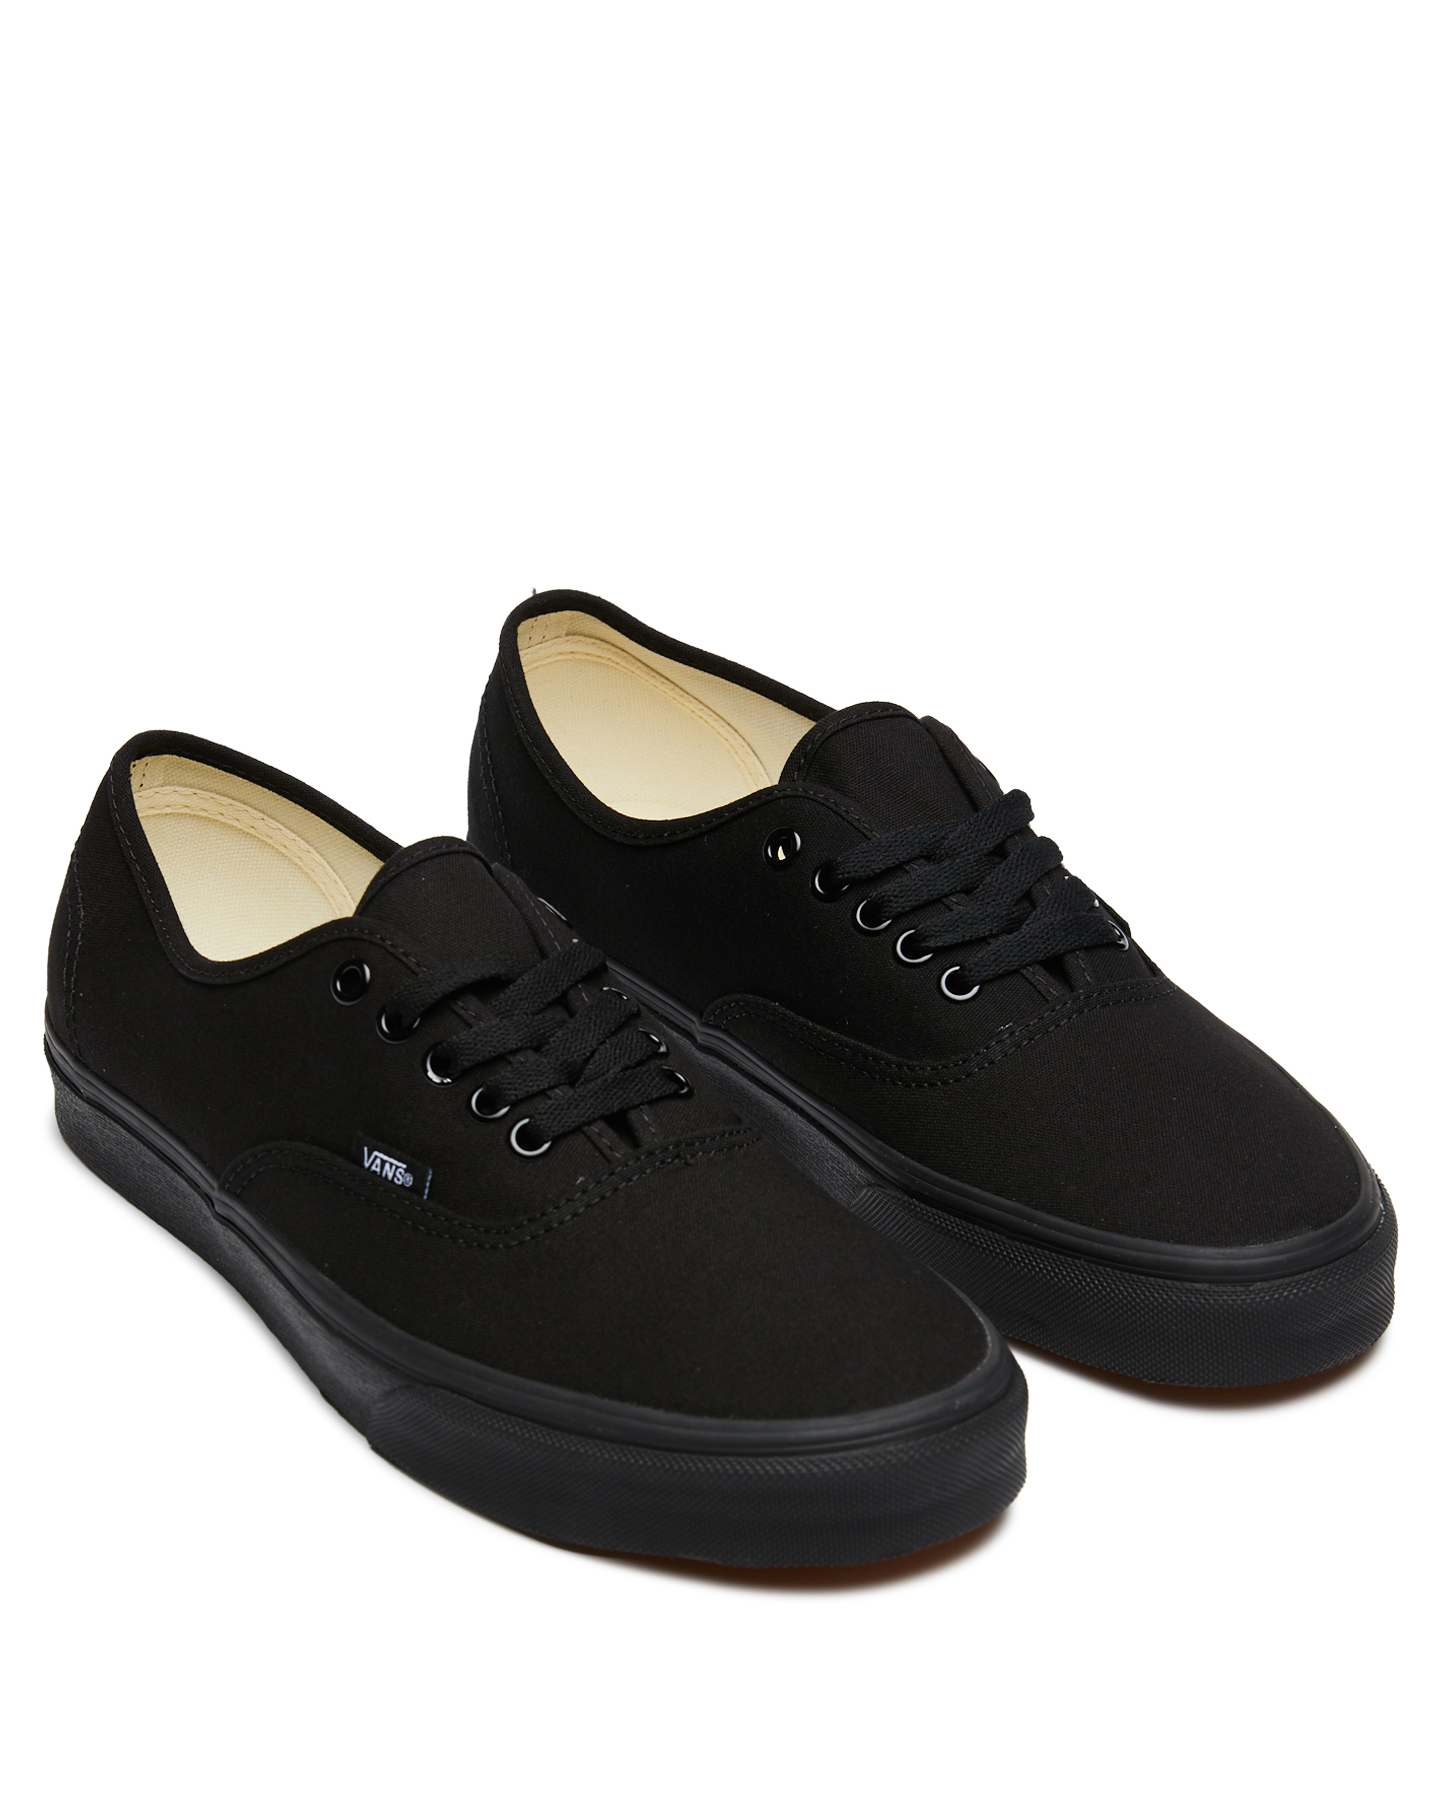 Vans Mens Authentic Shoe - Black Black 